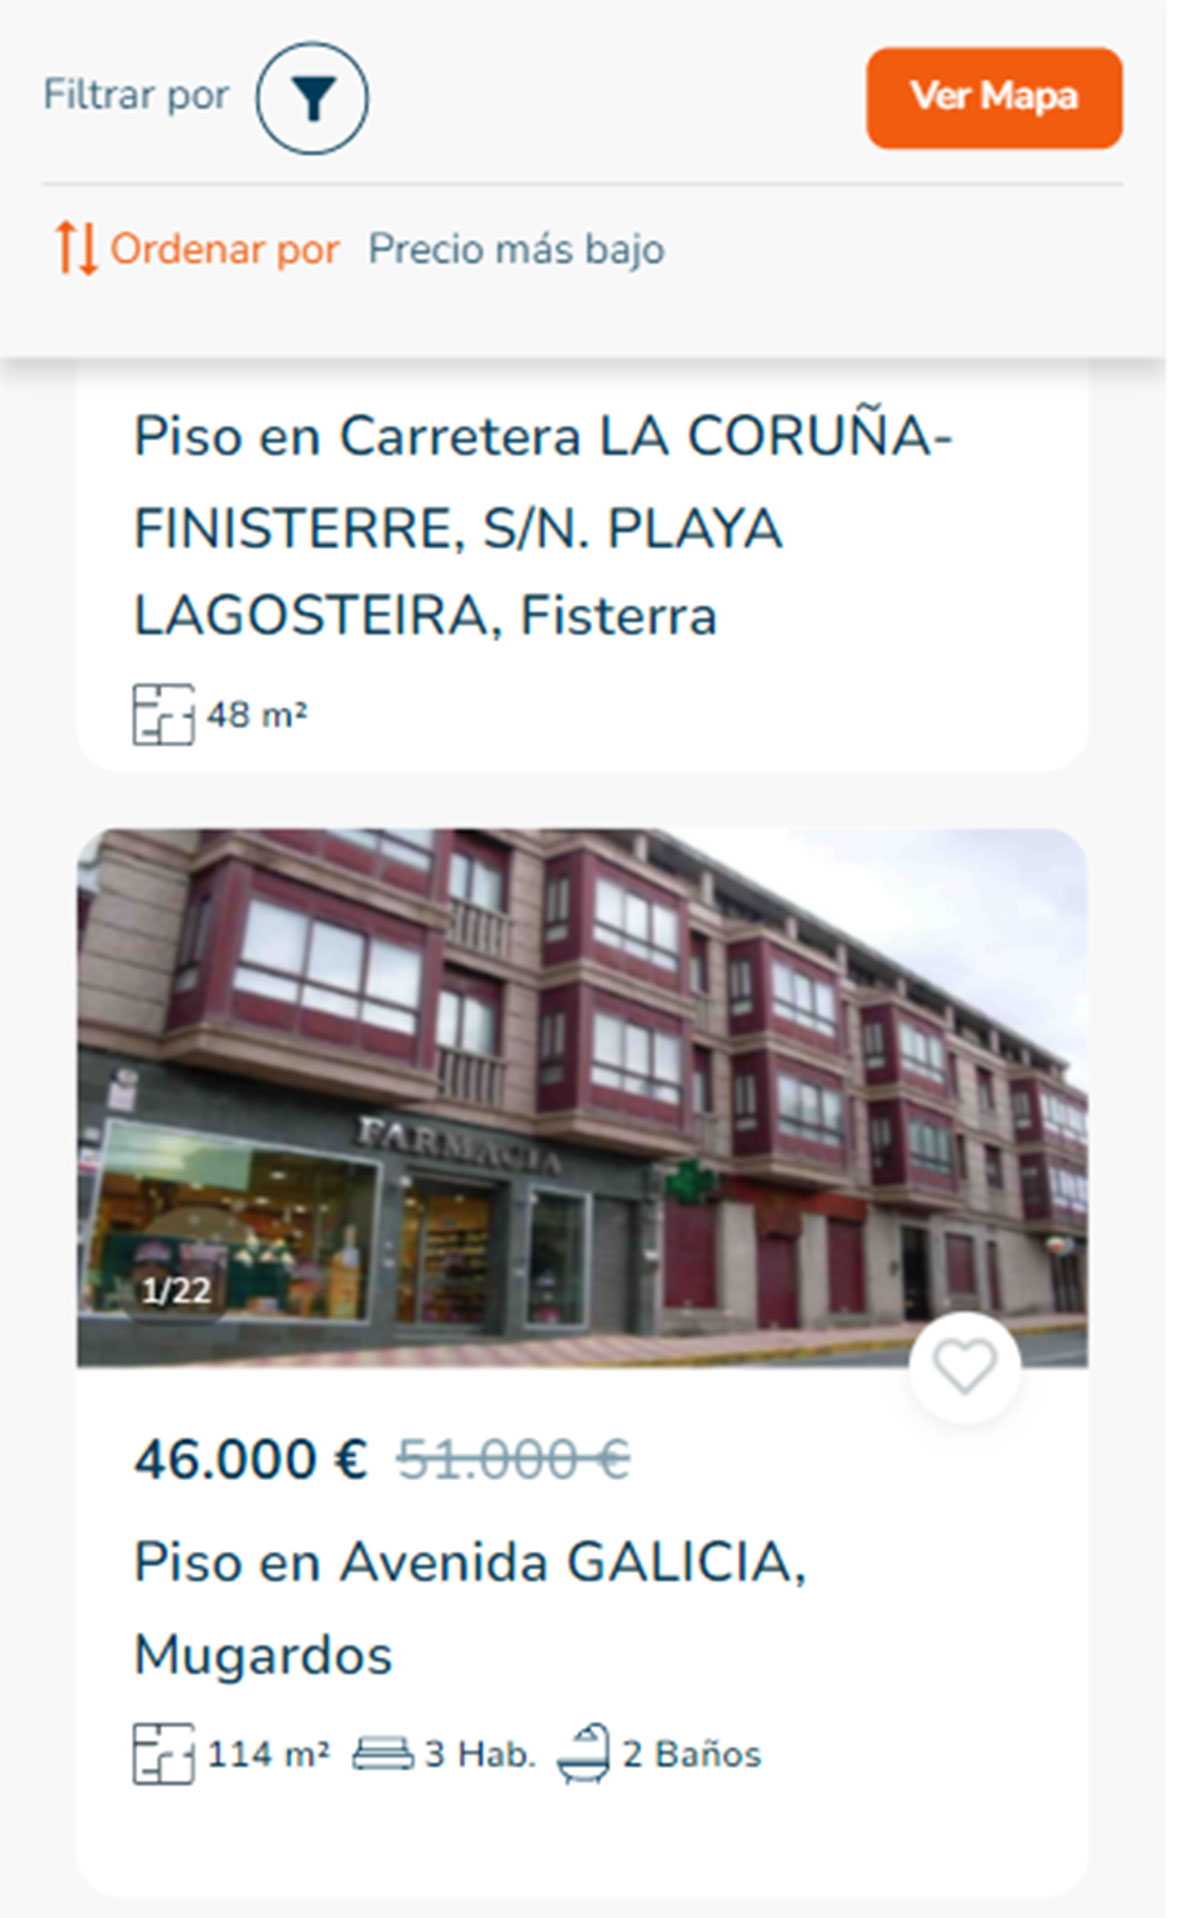 Piso a la venta en A Coruña por 46.000 euros